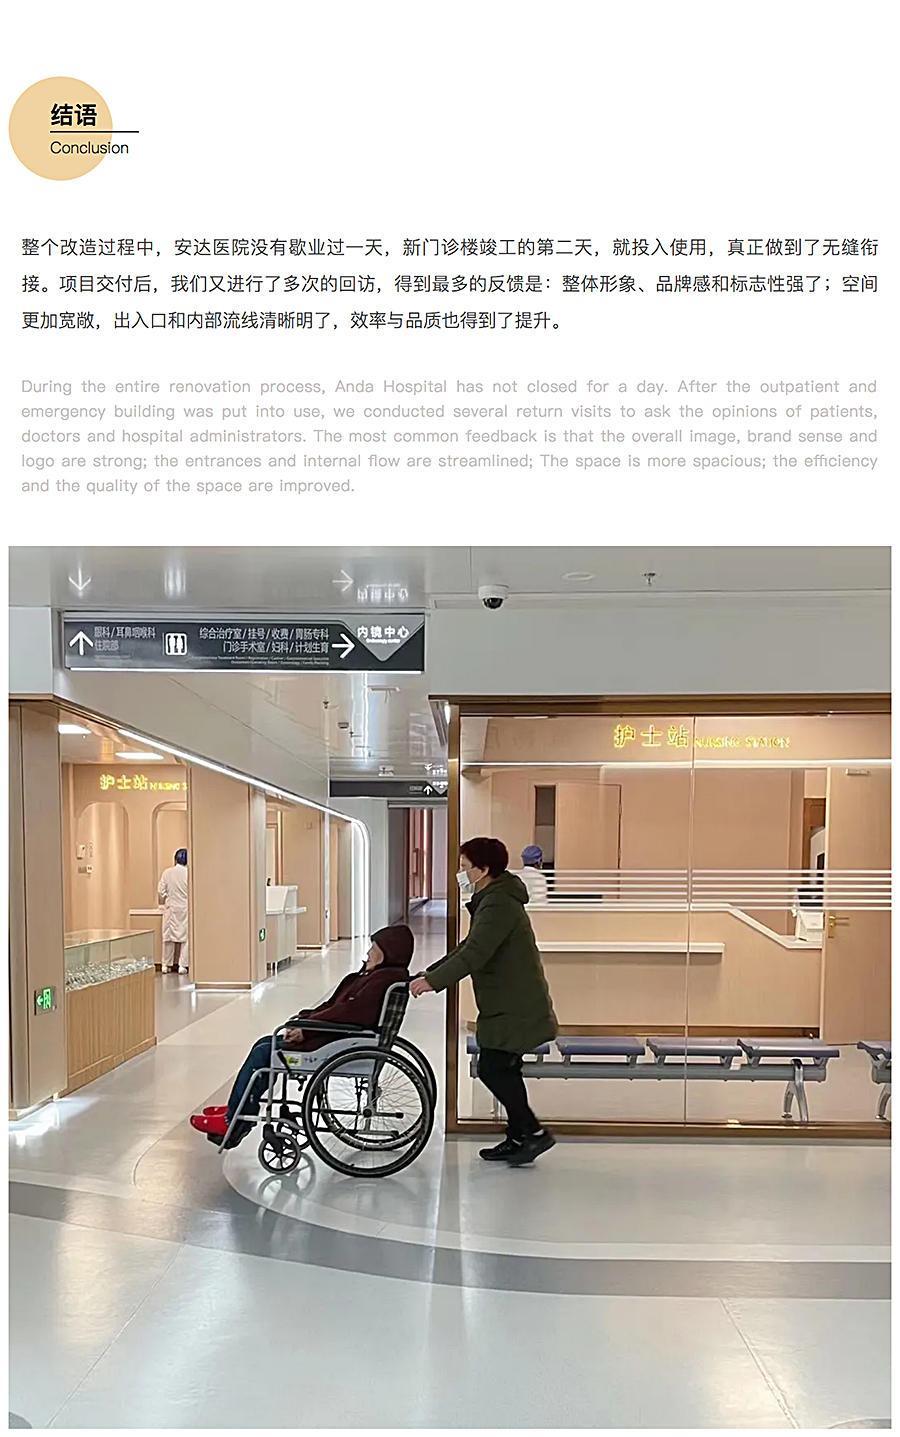 ⽆微不⾄，精益化思维下的上海安达医院⻔急诊改造_0016_图层-17.jpg